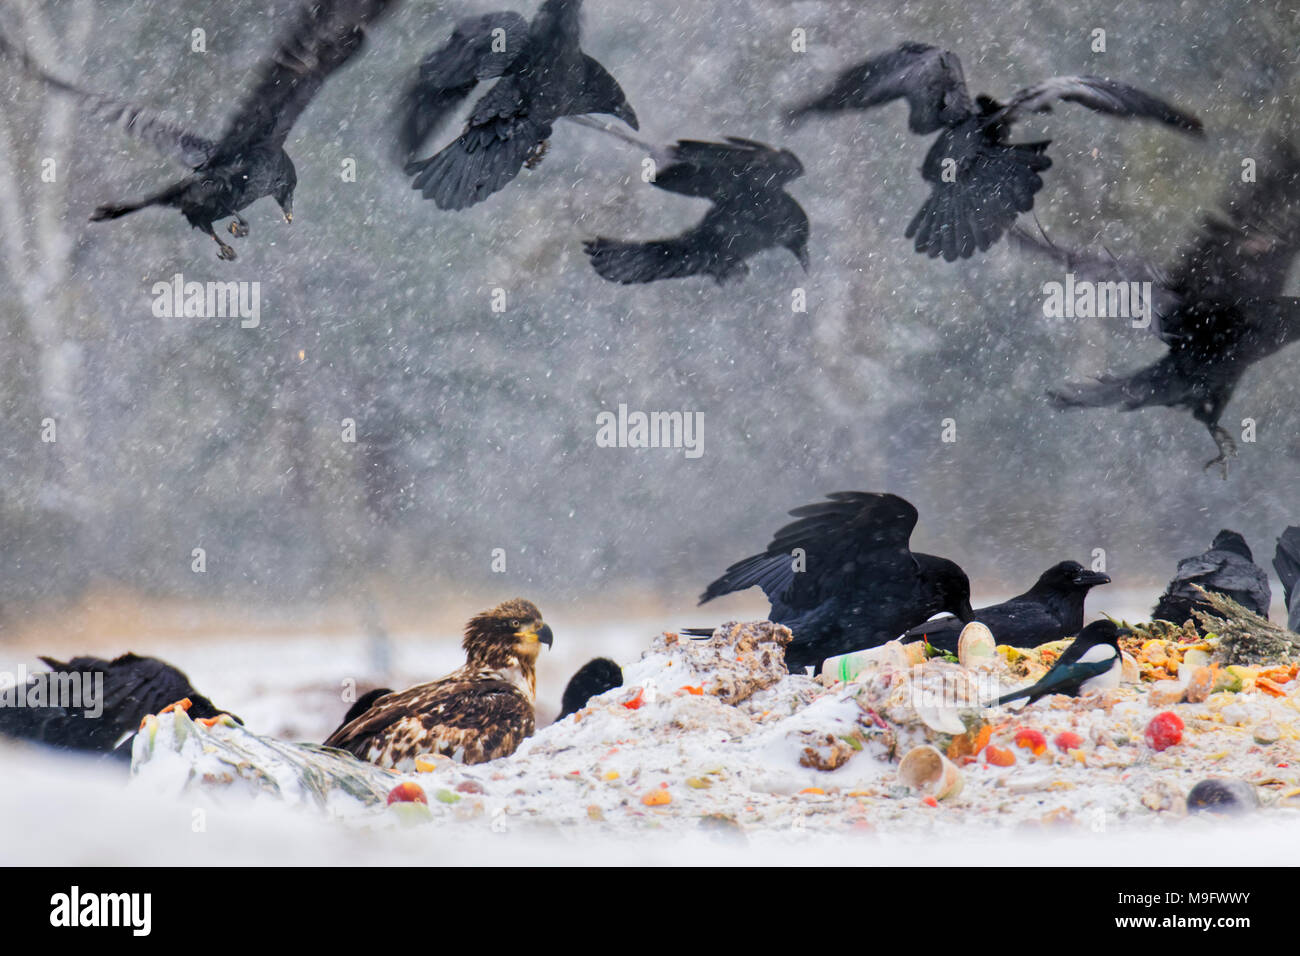 42,744.07751 Raben, Adler, Magpie, Vögel fliegen, Füttern, Essen Speisereste Abfall Müll in ein Loch in einen Schneesturm Stockfoto